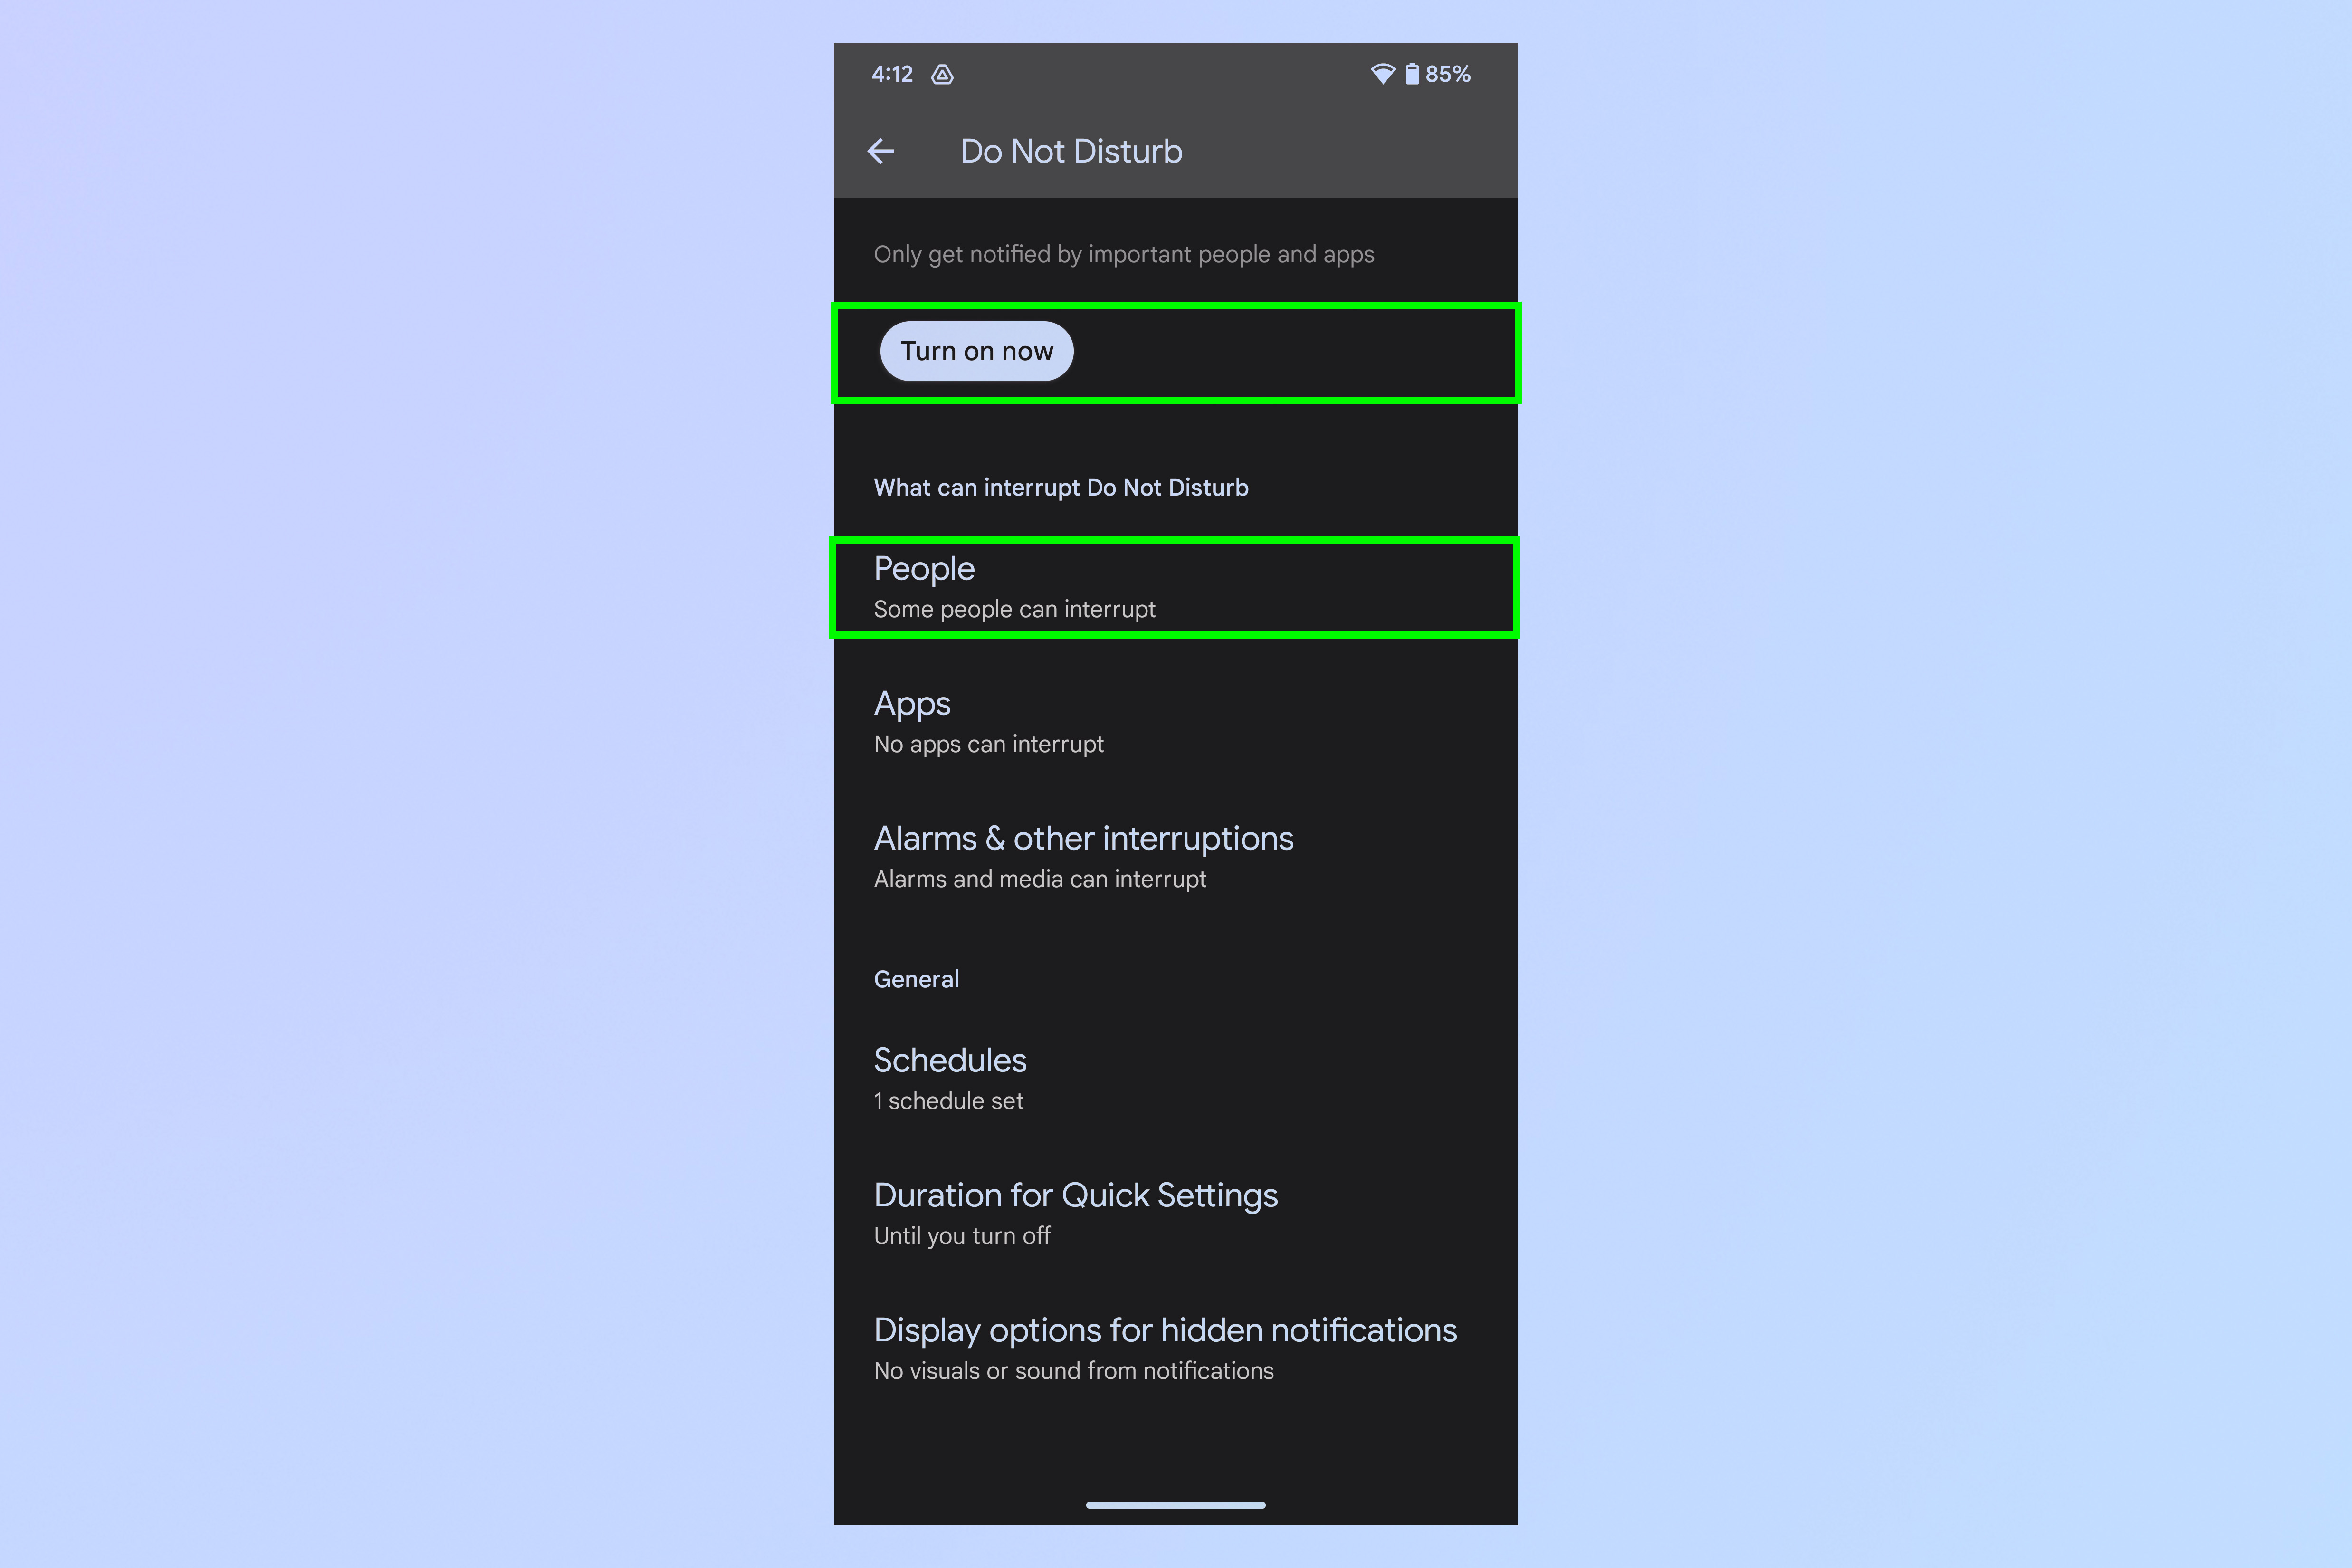 Скриншот, показывающий шаги, необходимые для блокировки всех вызовов на Android.